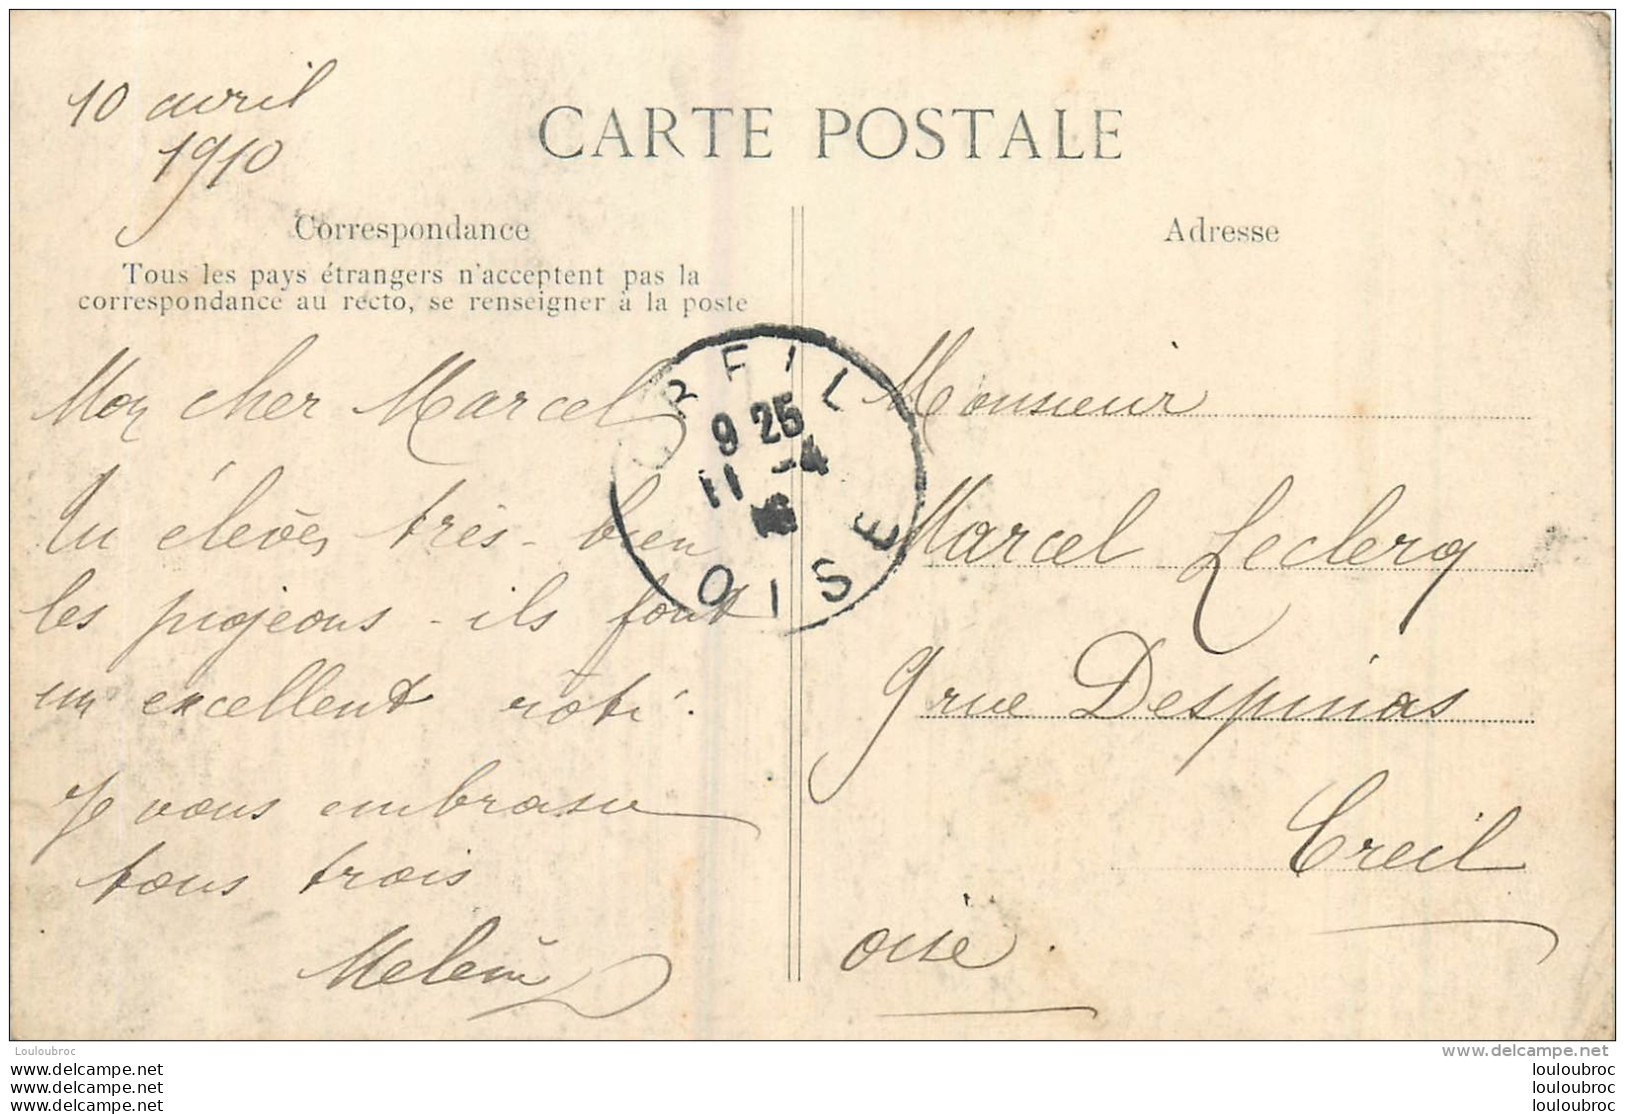 PARIS VII AVENUE RAPP CRUE DE LA SEINE JANVIER 1910 - Arrondissement: 07